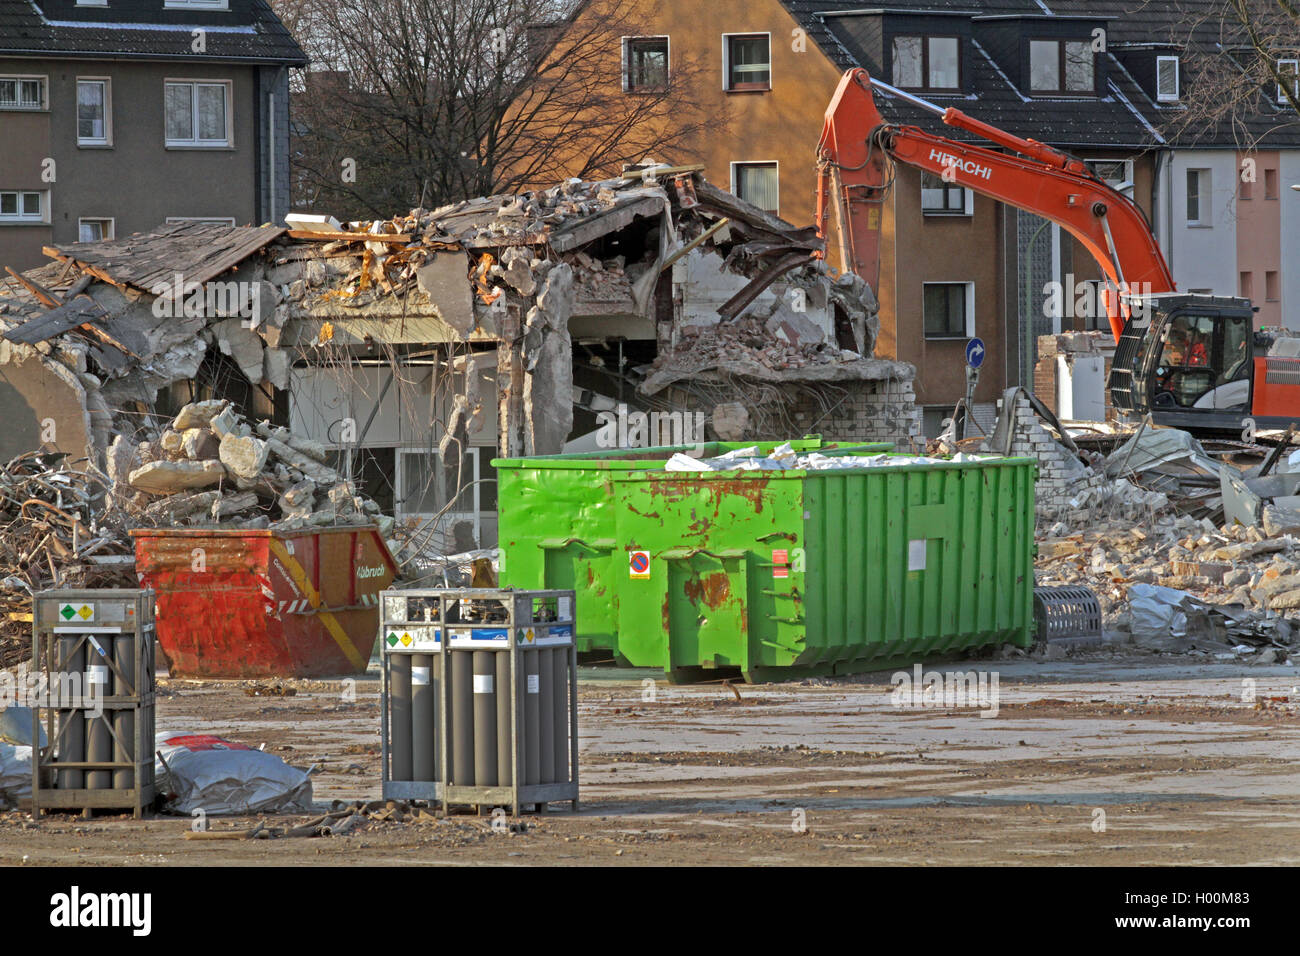 Recyclage des matériaux de construction après démolition, Allemagne Banque D'Images